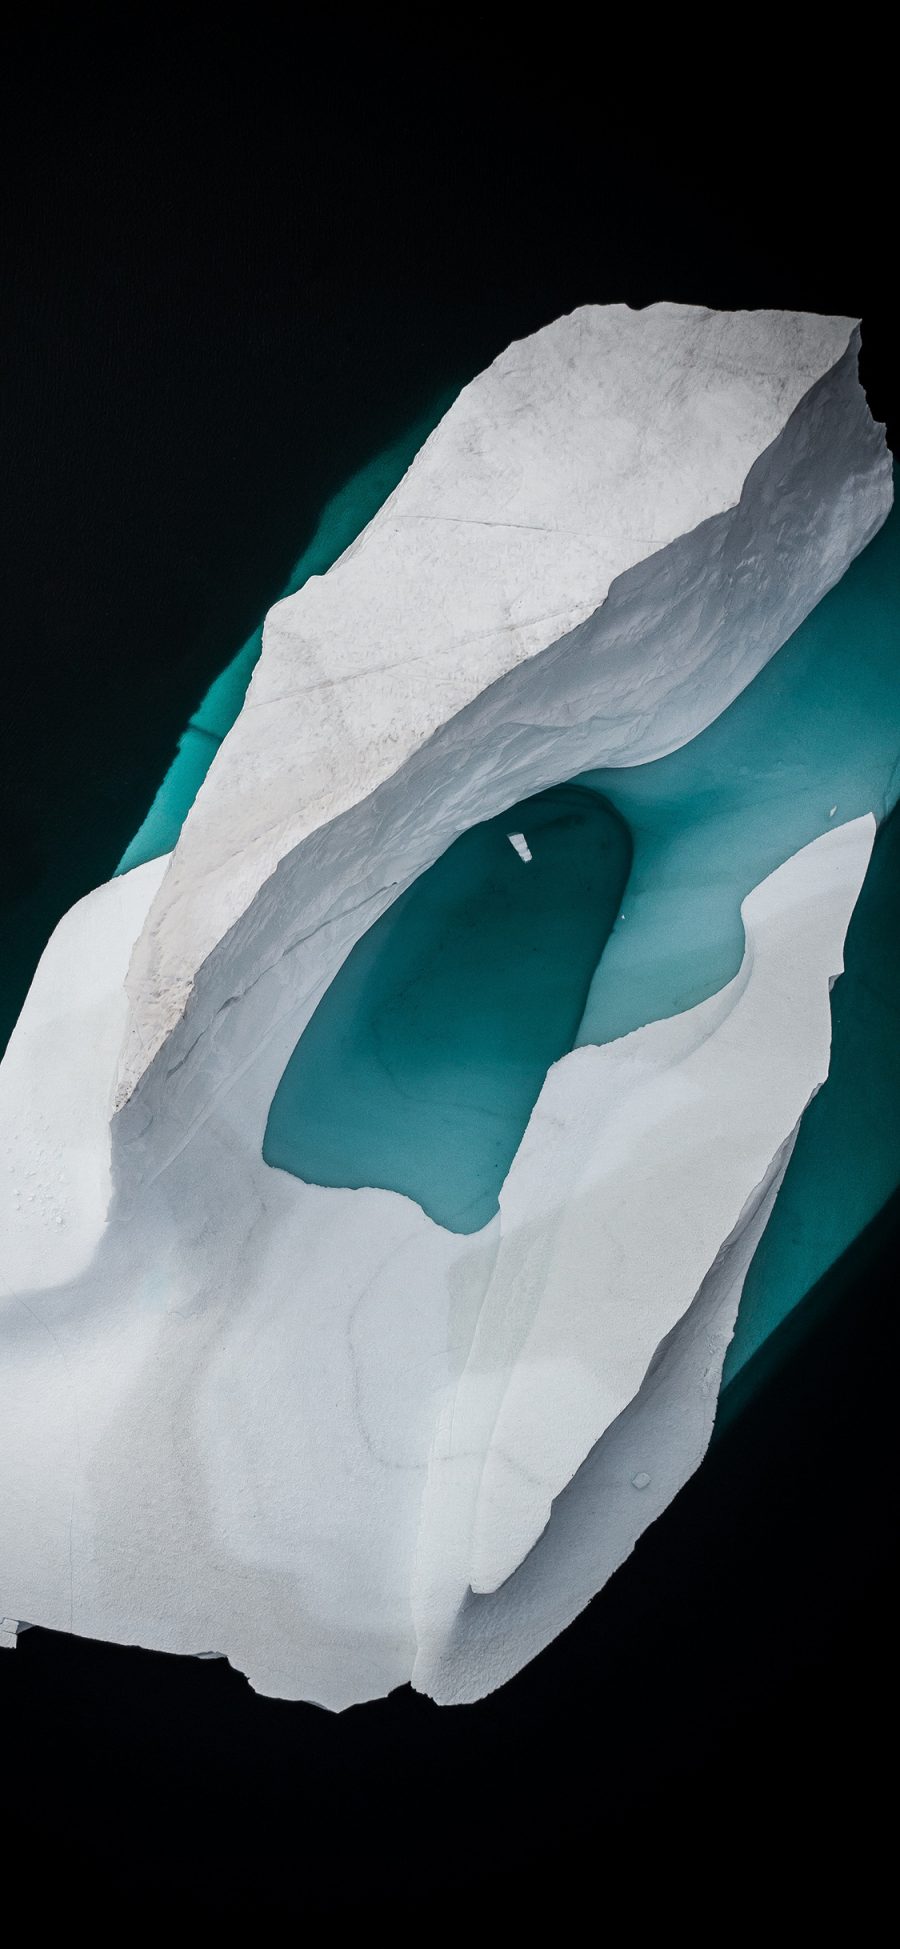 [2436×1125]航拍 冰川 冰块 海水 蓝色 寒冷 苹果手机壁纸图片